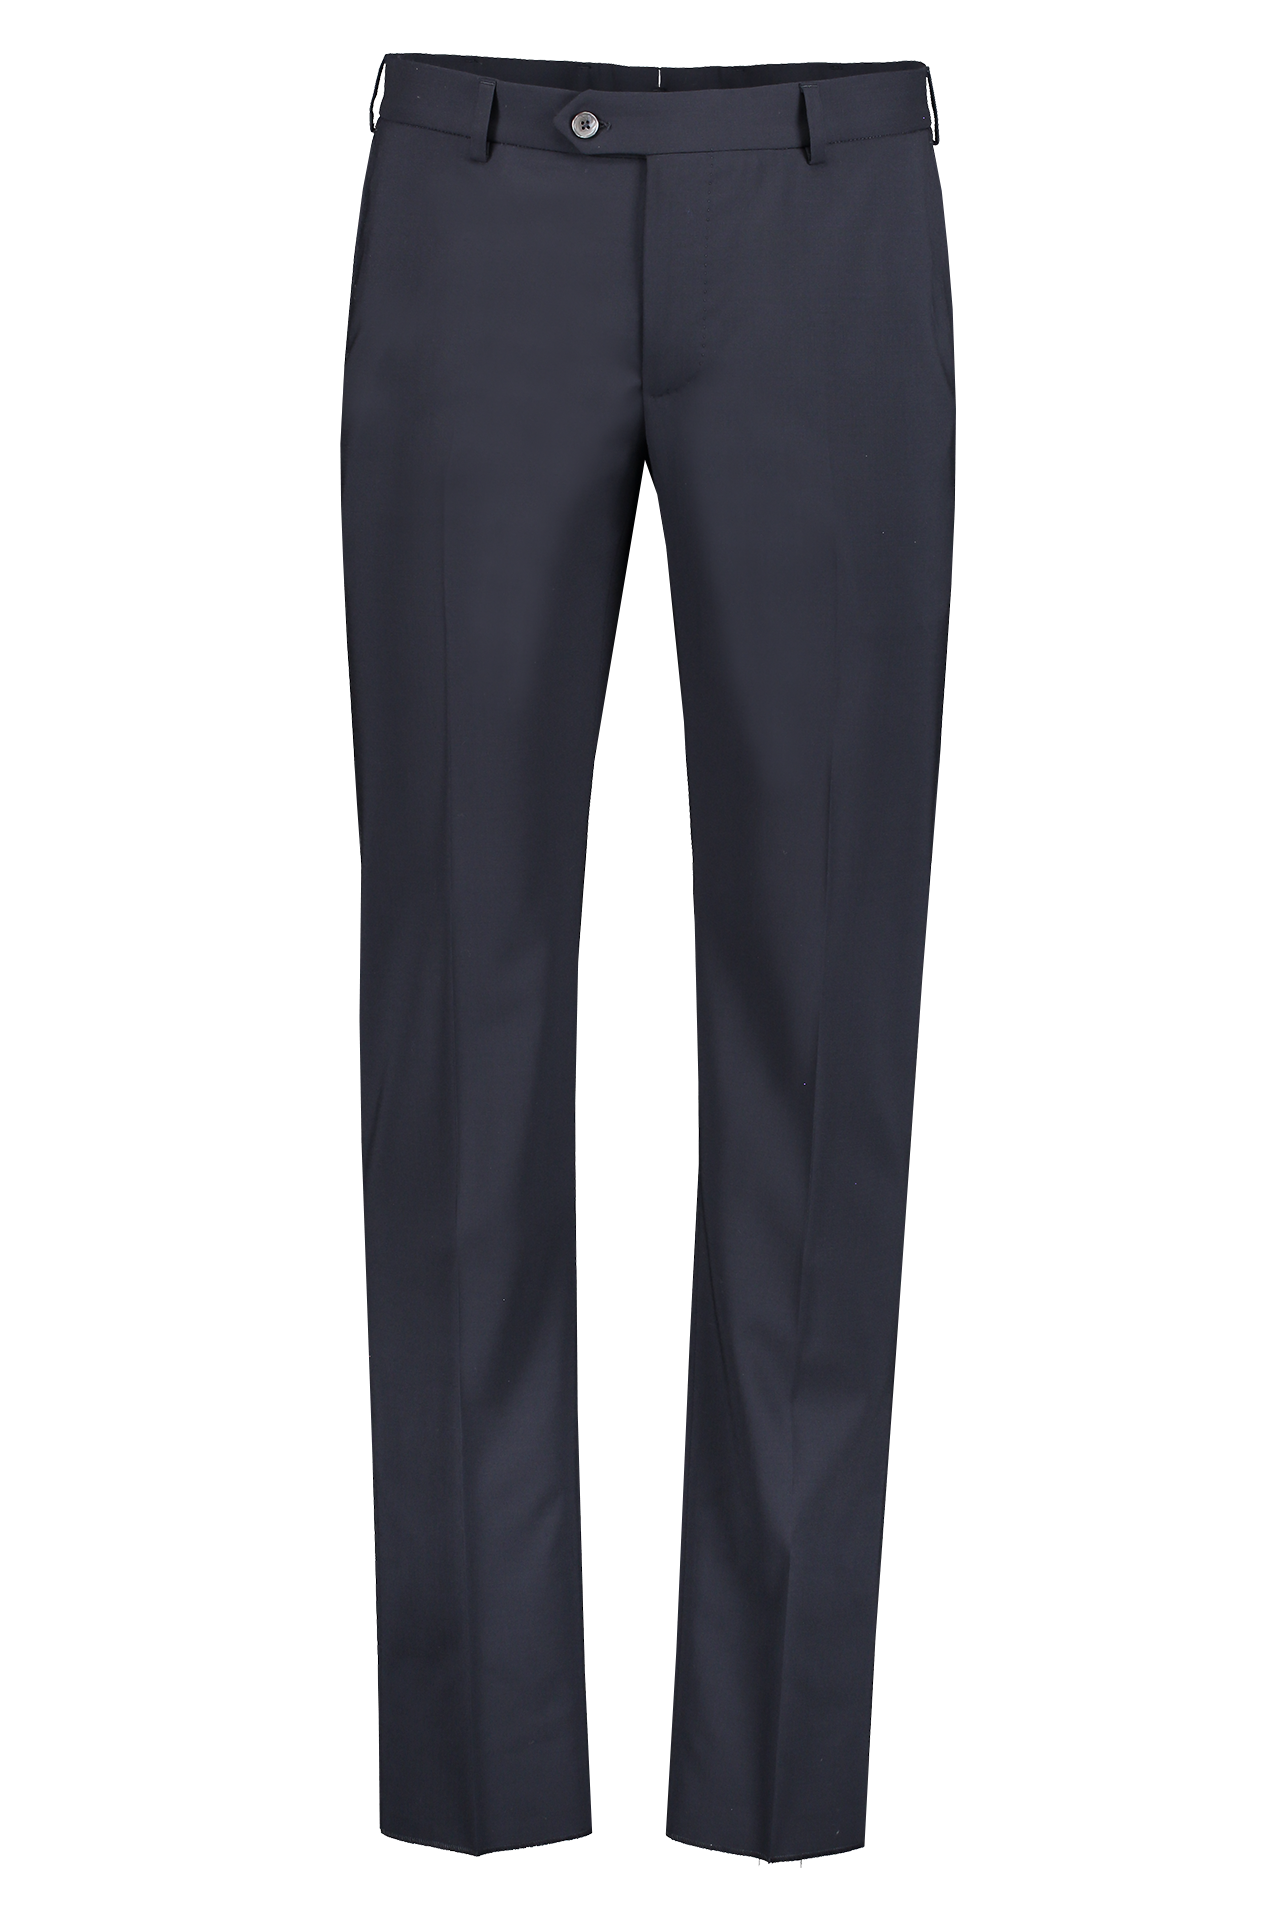 Zero Gravity Trouser (6613937881203)